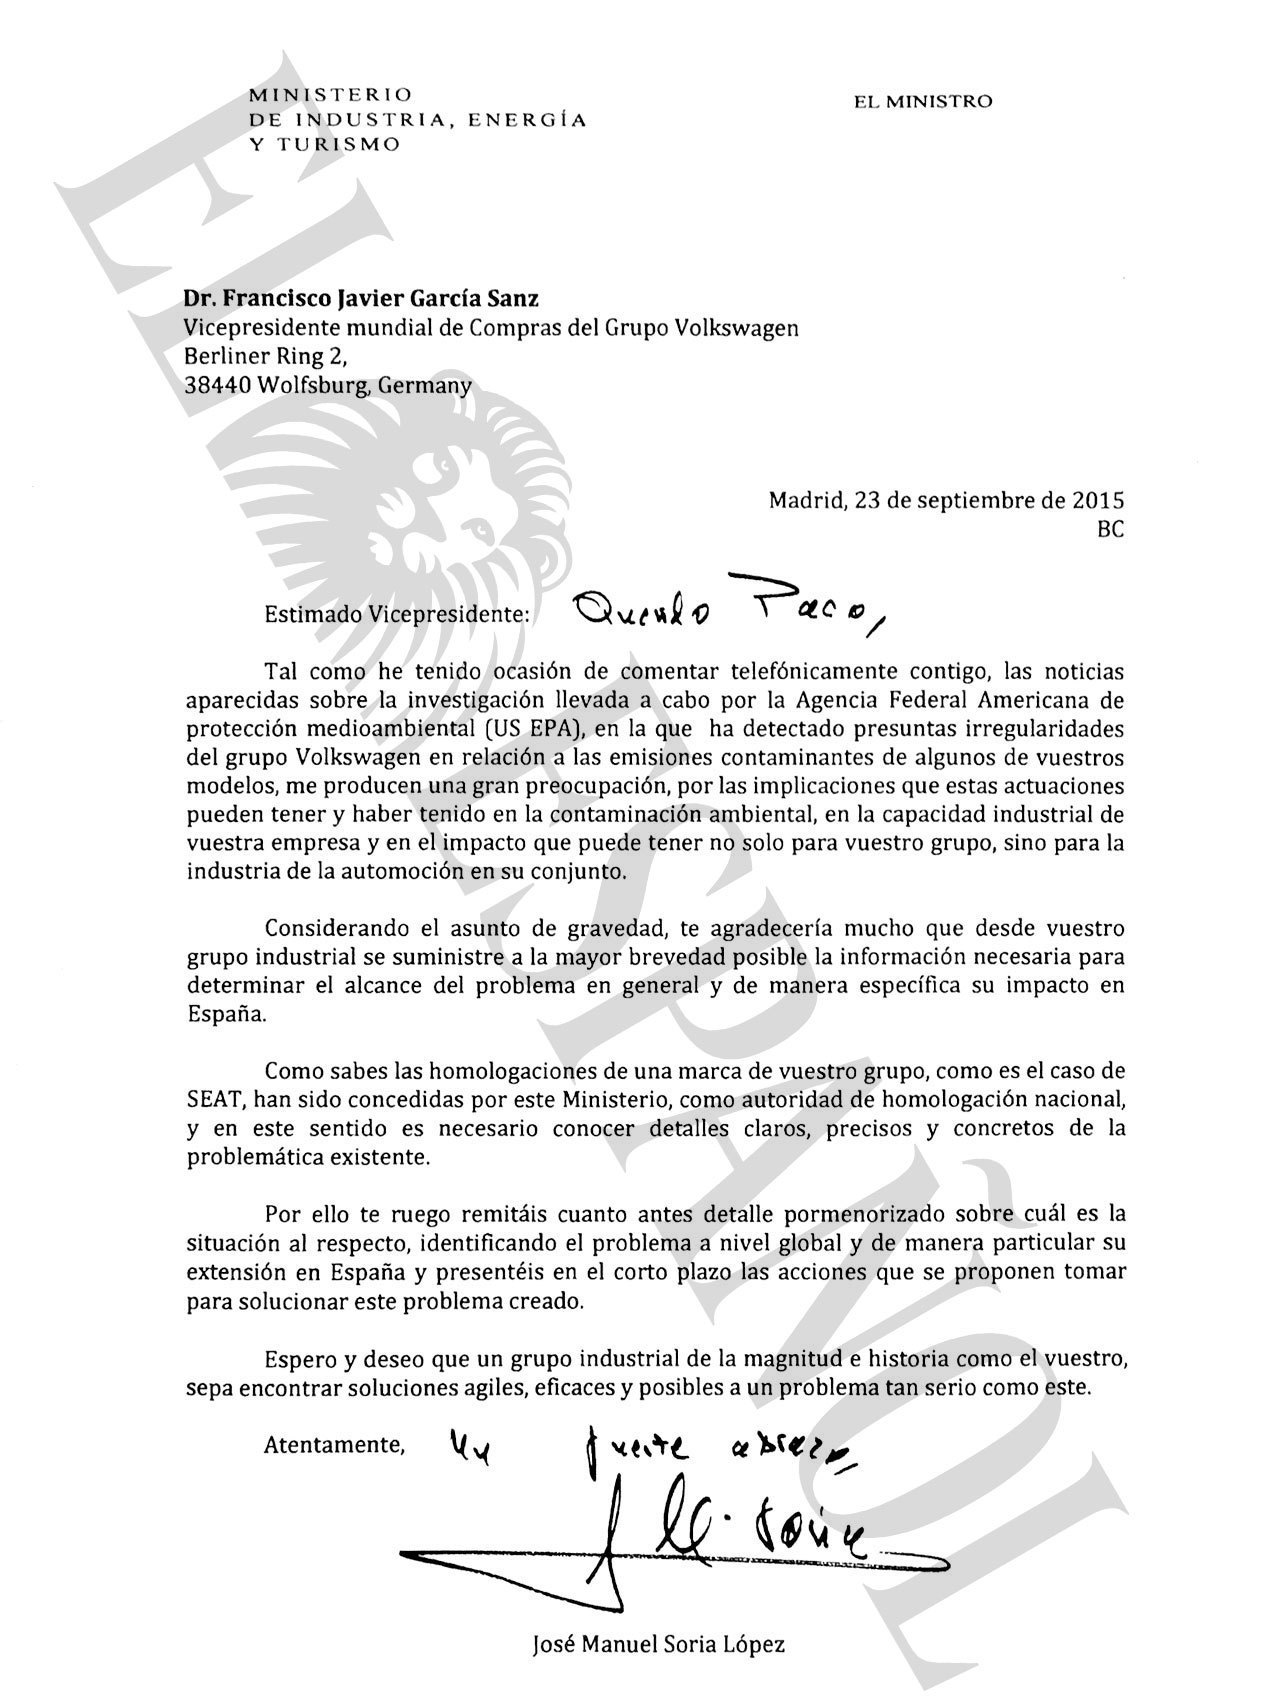 Carta del ministro Soria a los responsables de la empresa alemana.